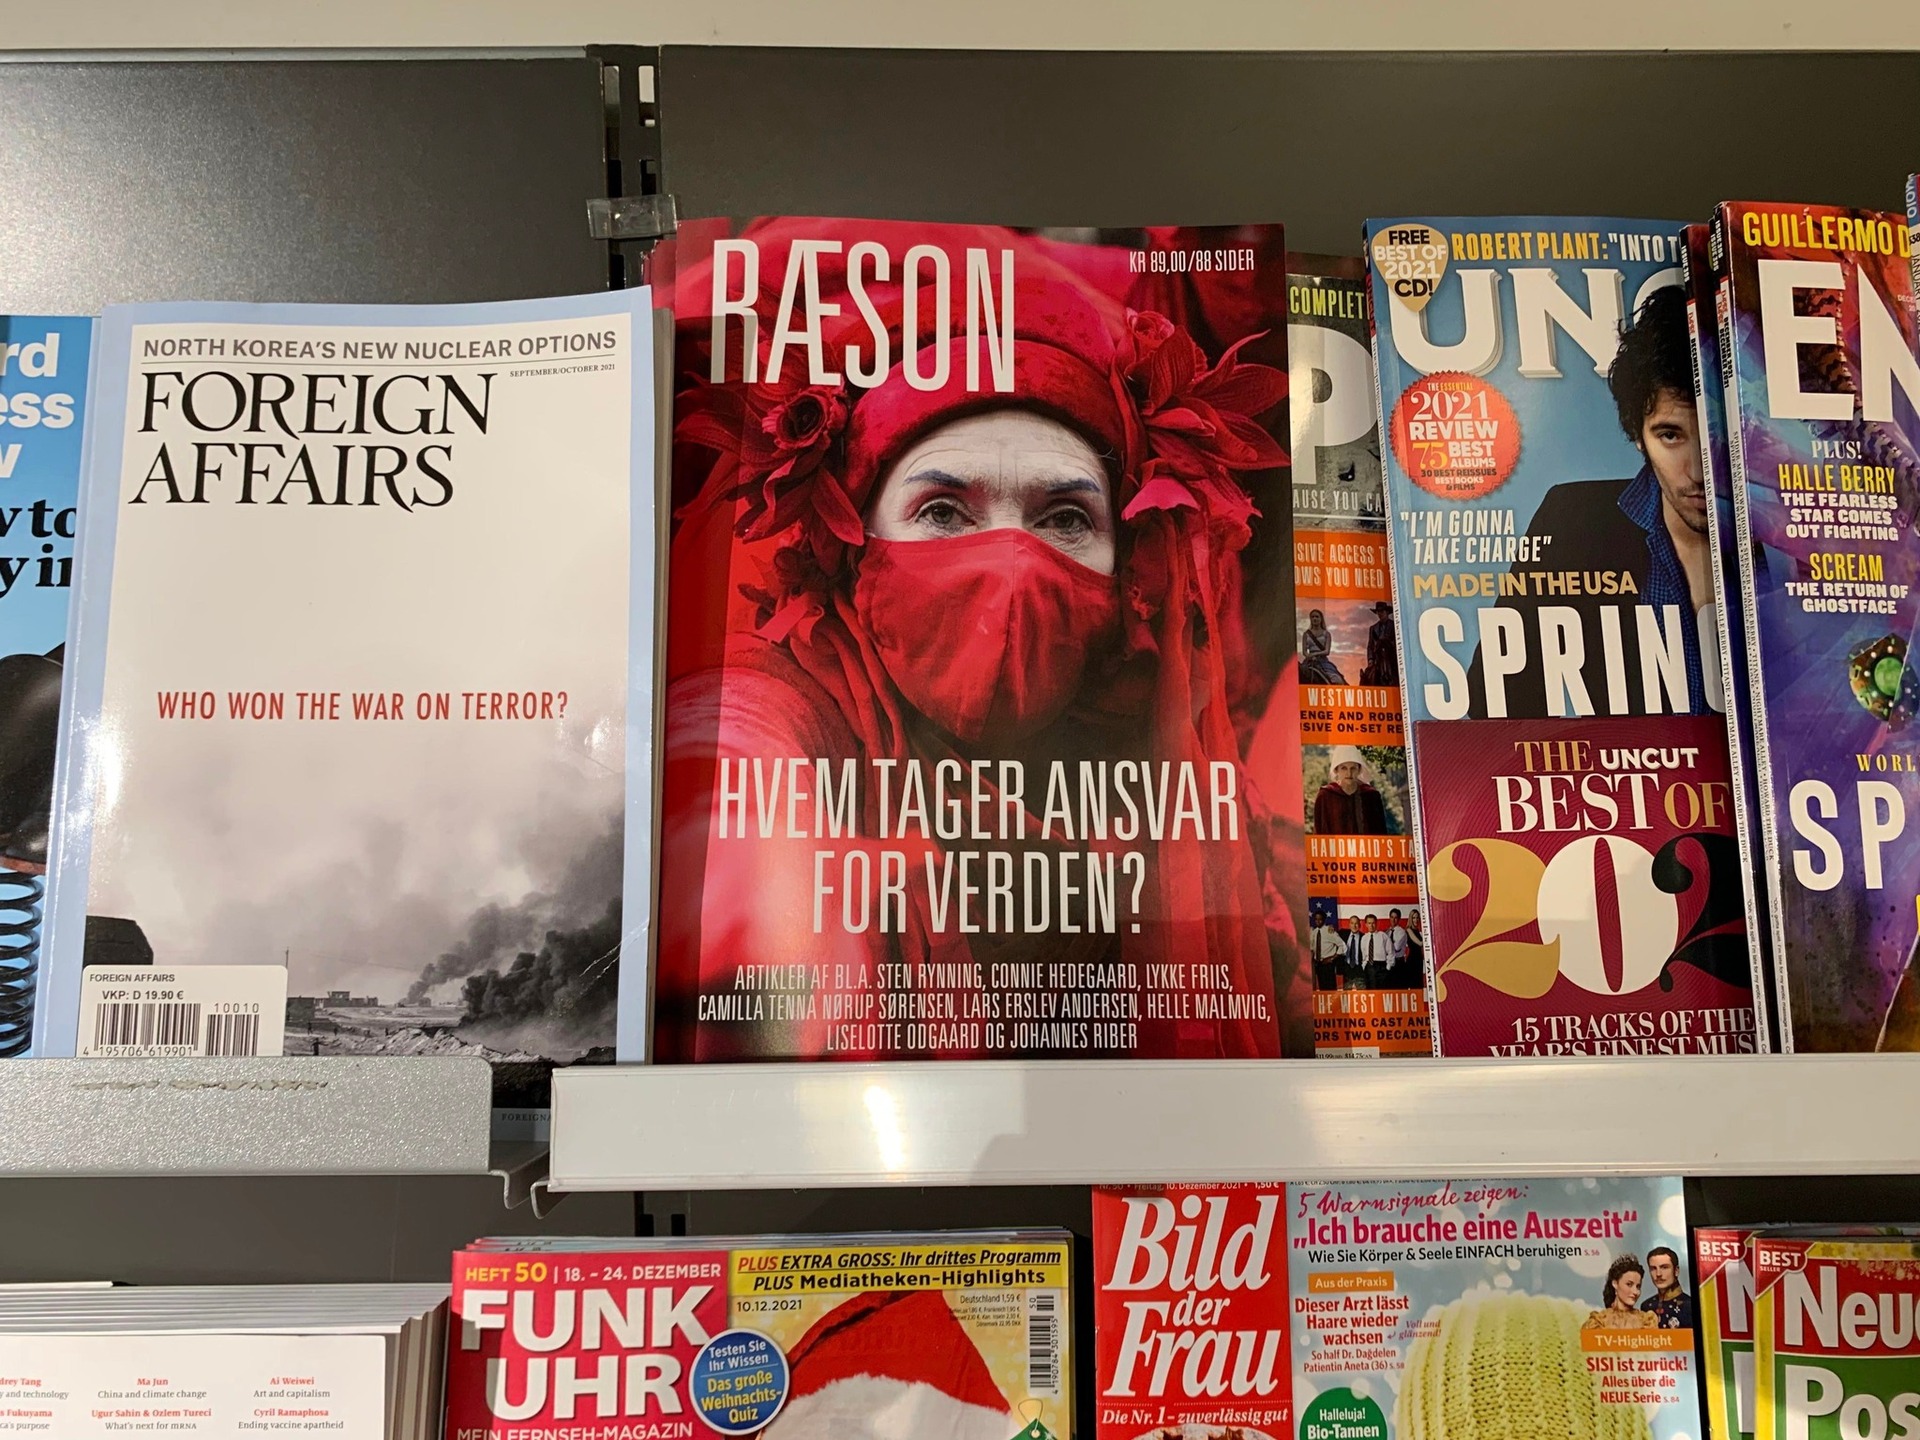 I kioskerne i April: Det nye trykte nummer af RÆSON. Tegn abonnement og modtag bladet med posten inden udgivelsen